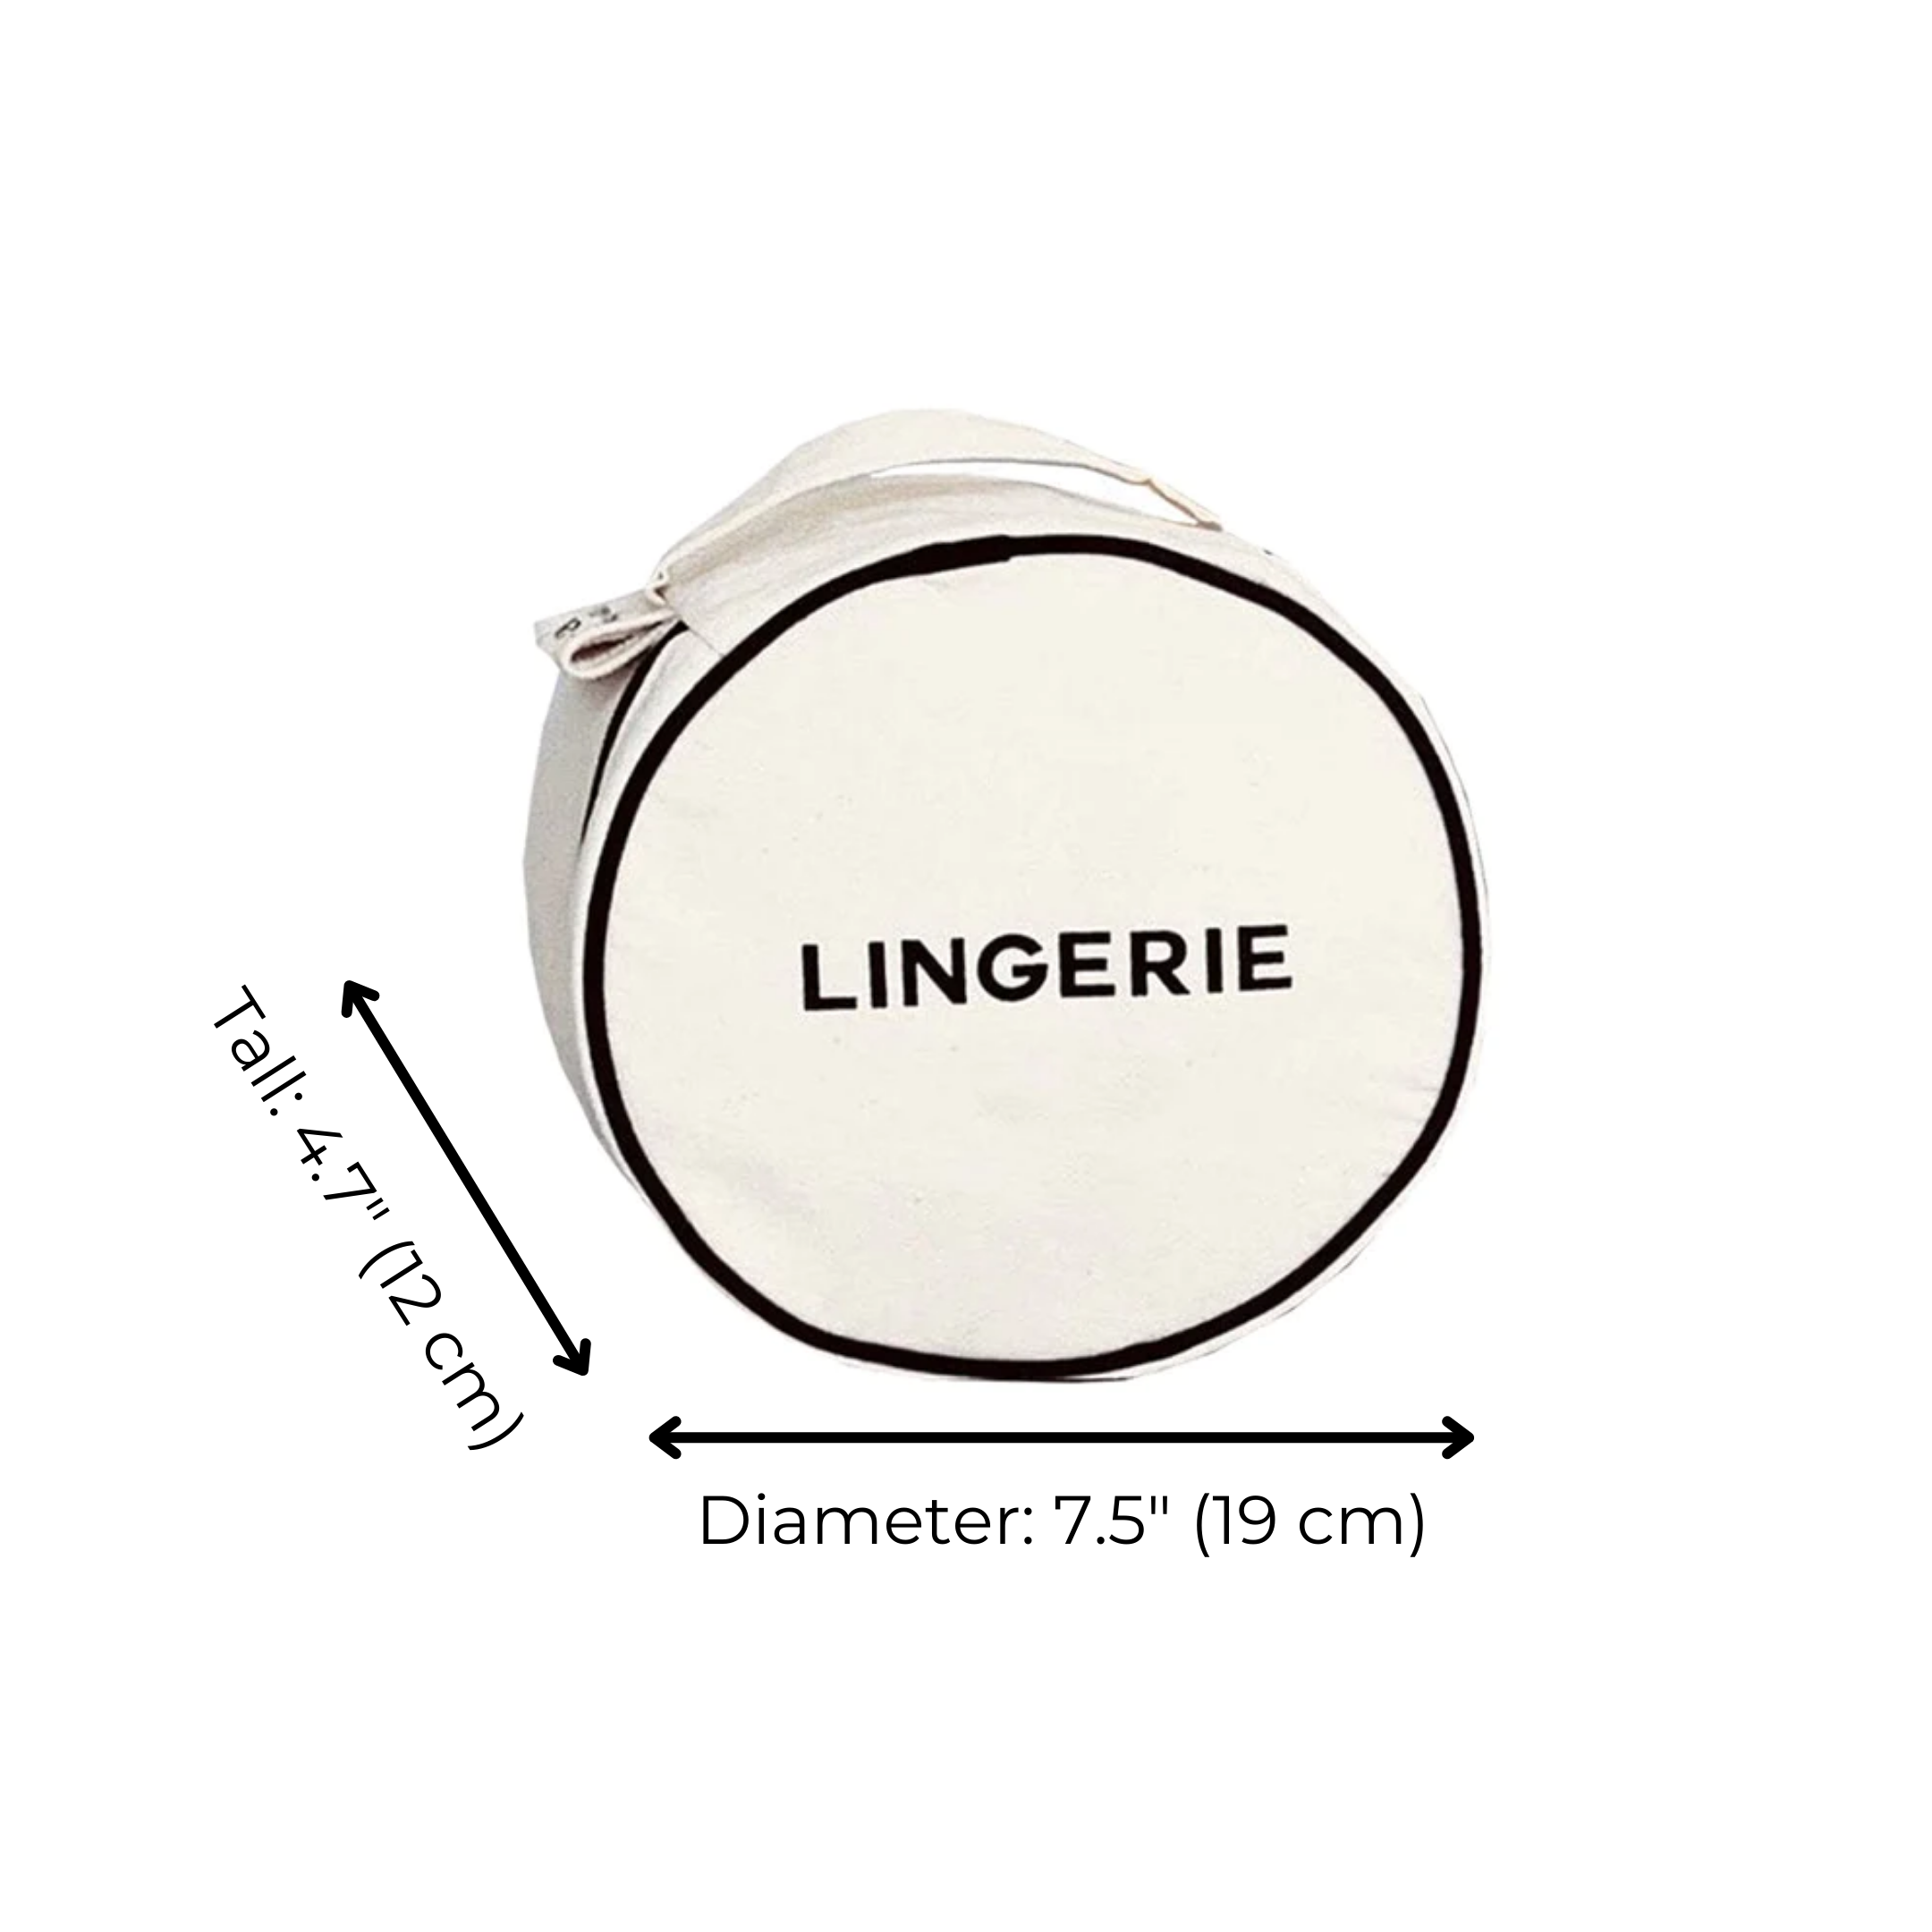 Round Lingerie Case, Cream | Bag-all